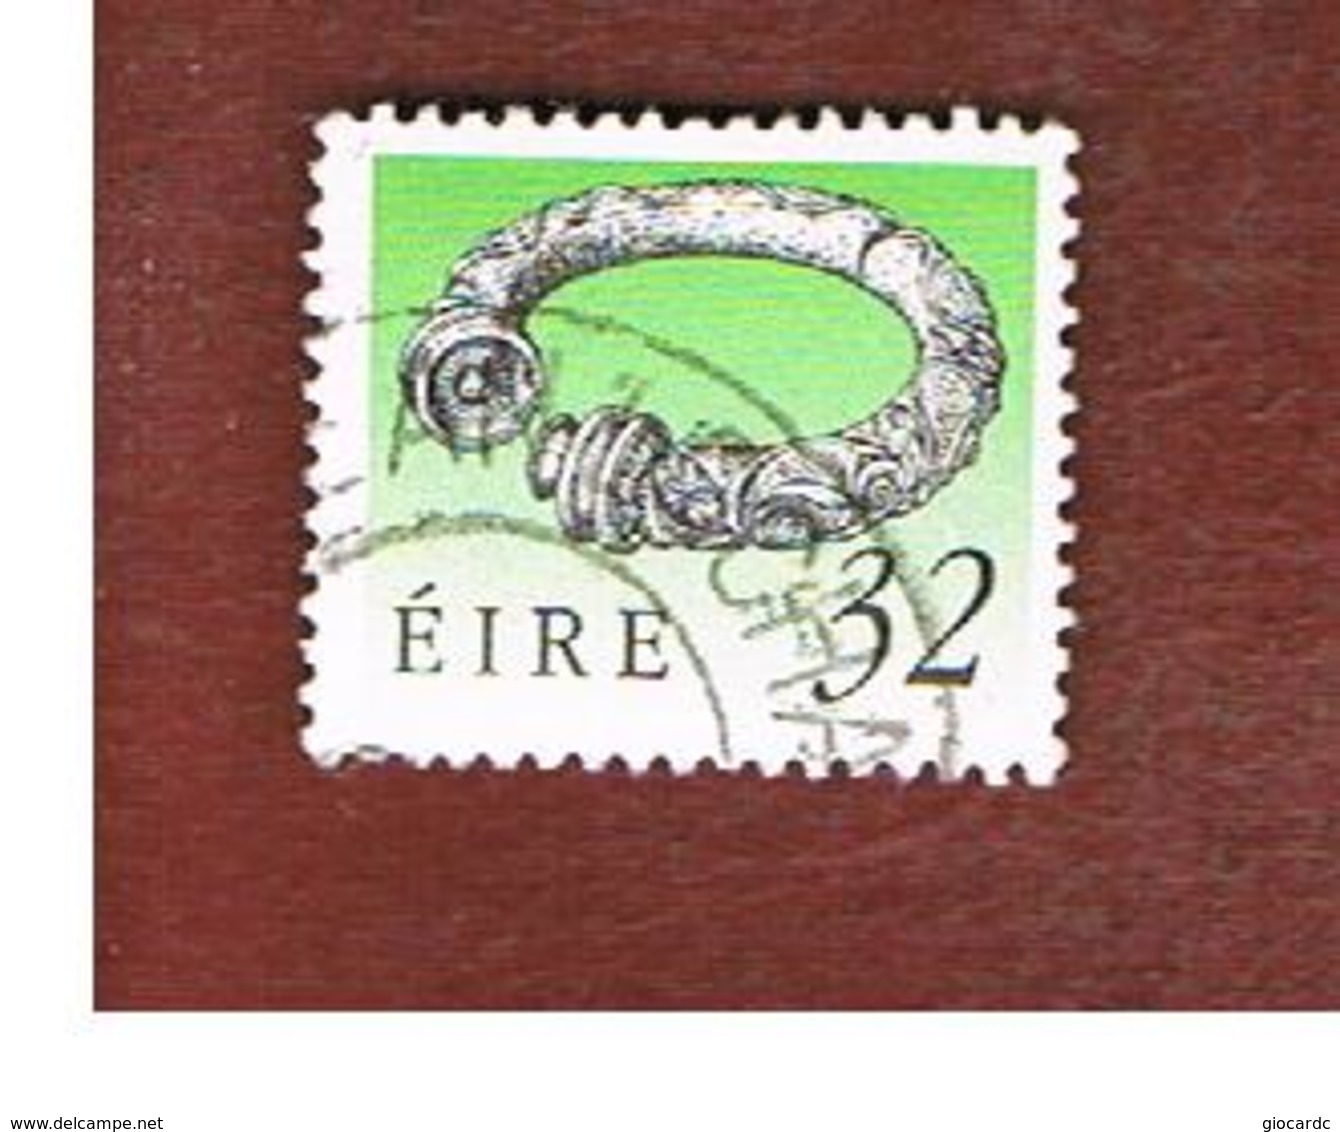 IRLANDA (IRELAND) -  SG 755   -  1990  IRISH HERITAGE: BROIGHTER  COLLAR   -   USED - Usati